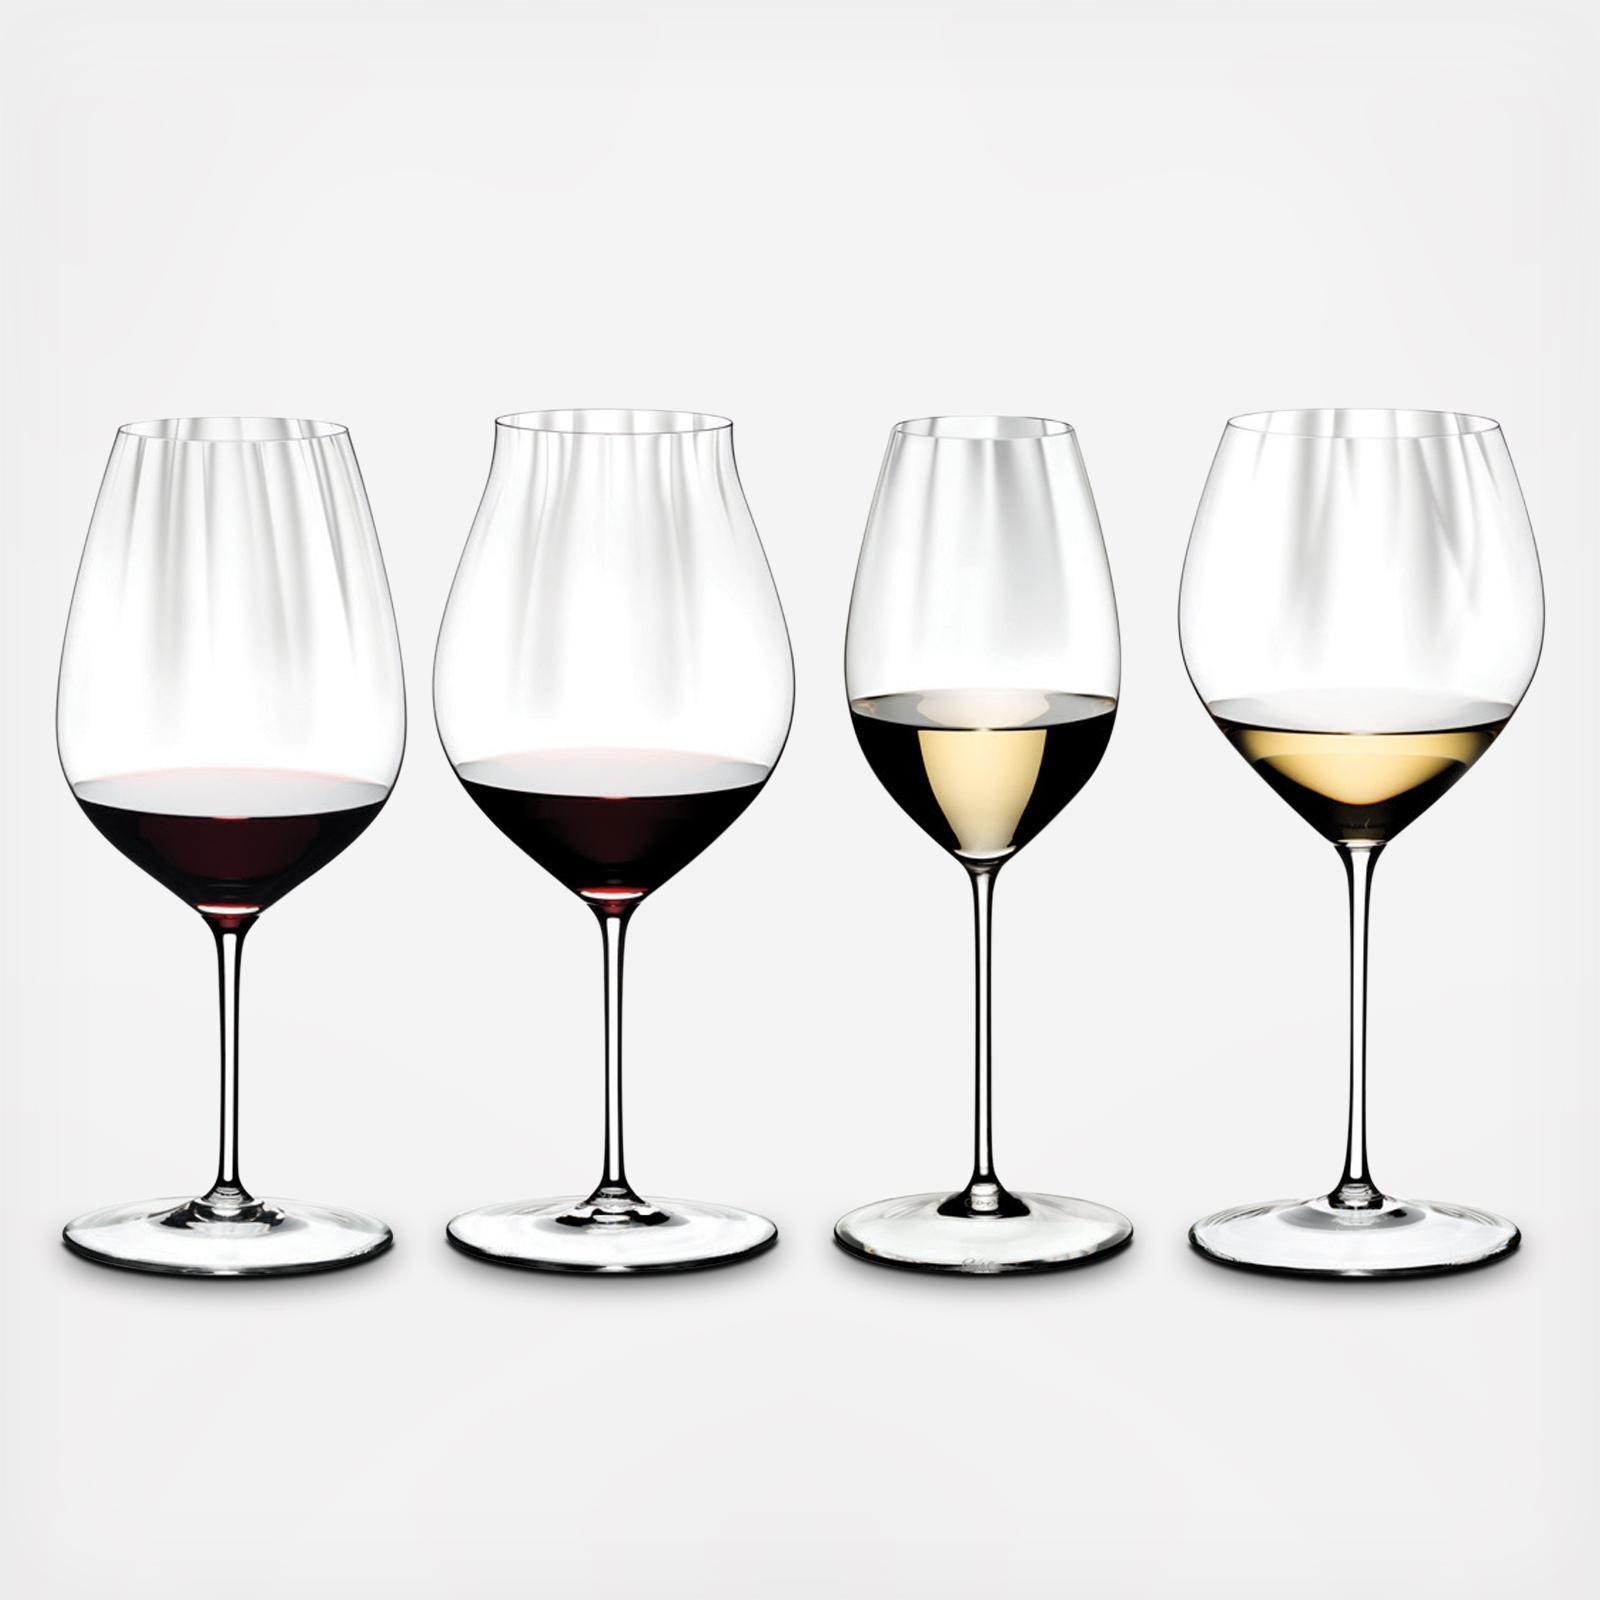 Riedel Performance Sauvignon Blanc Wine Glass